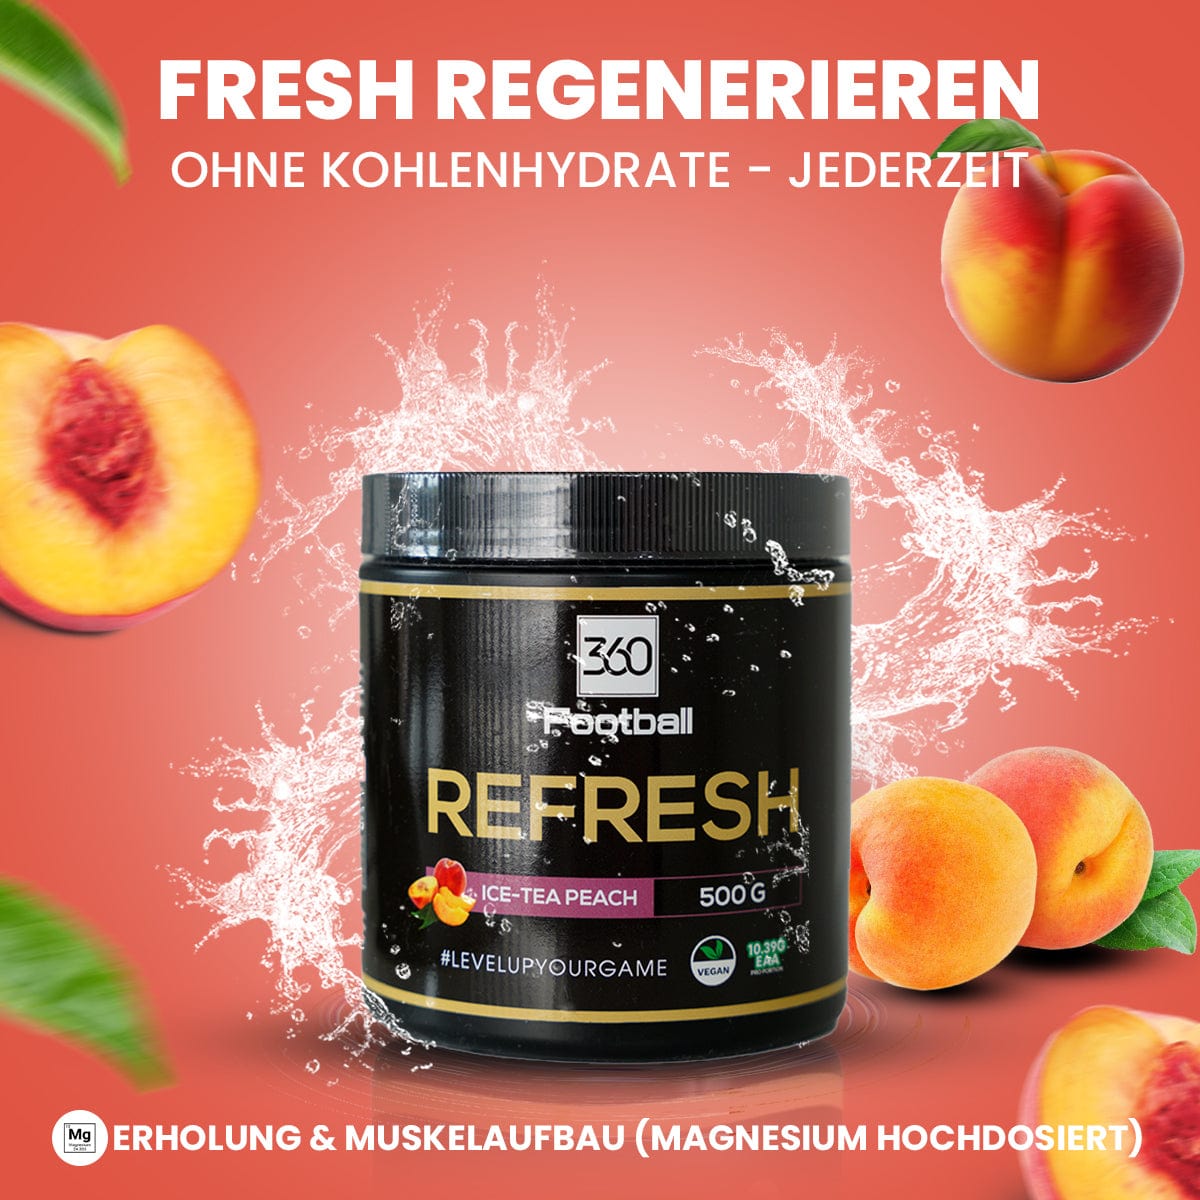 Der Refresh360 mit einer Ice-Tea Peach Grafik im Hintergrund